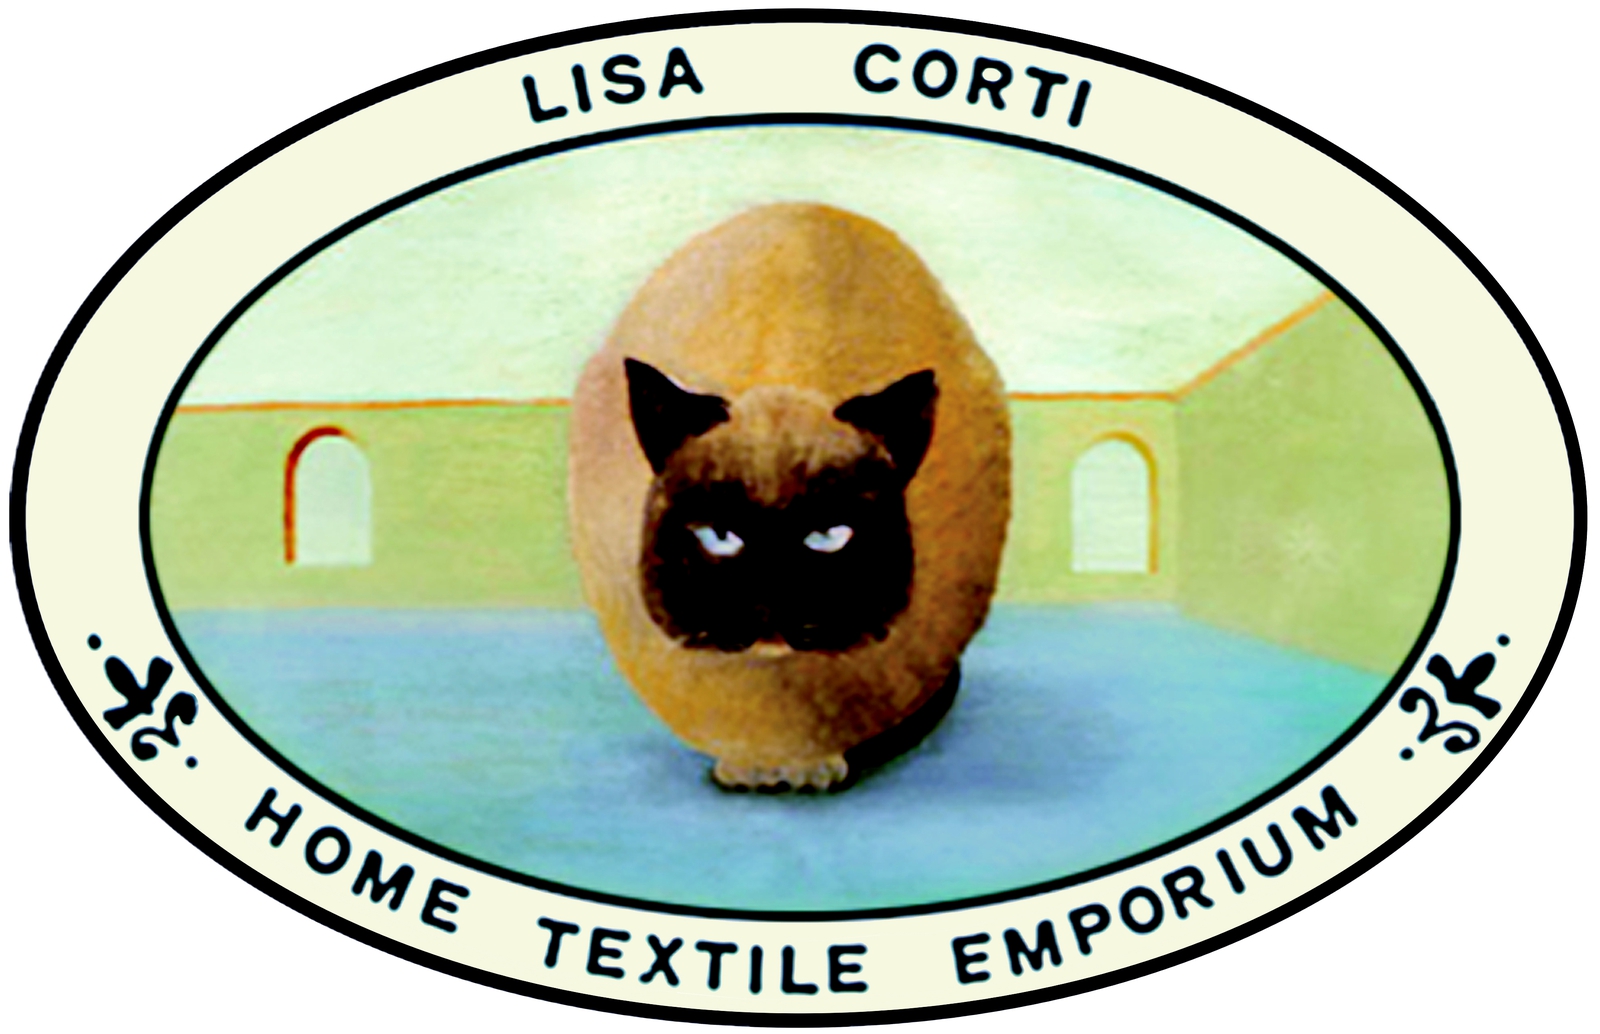 Lisa Corti Home Textile Emporium